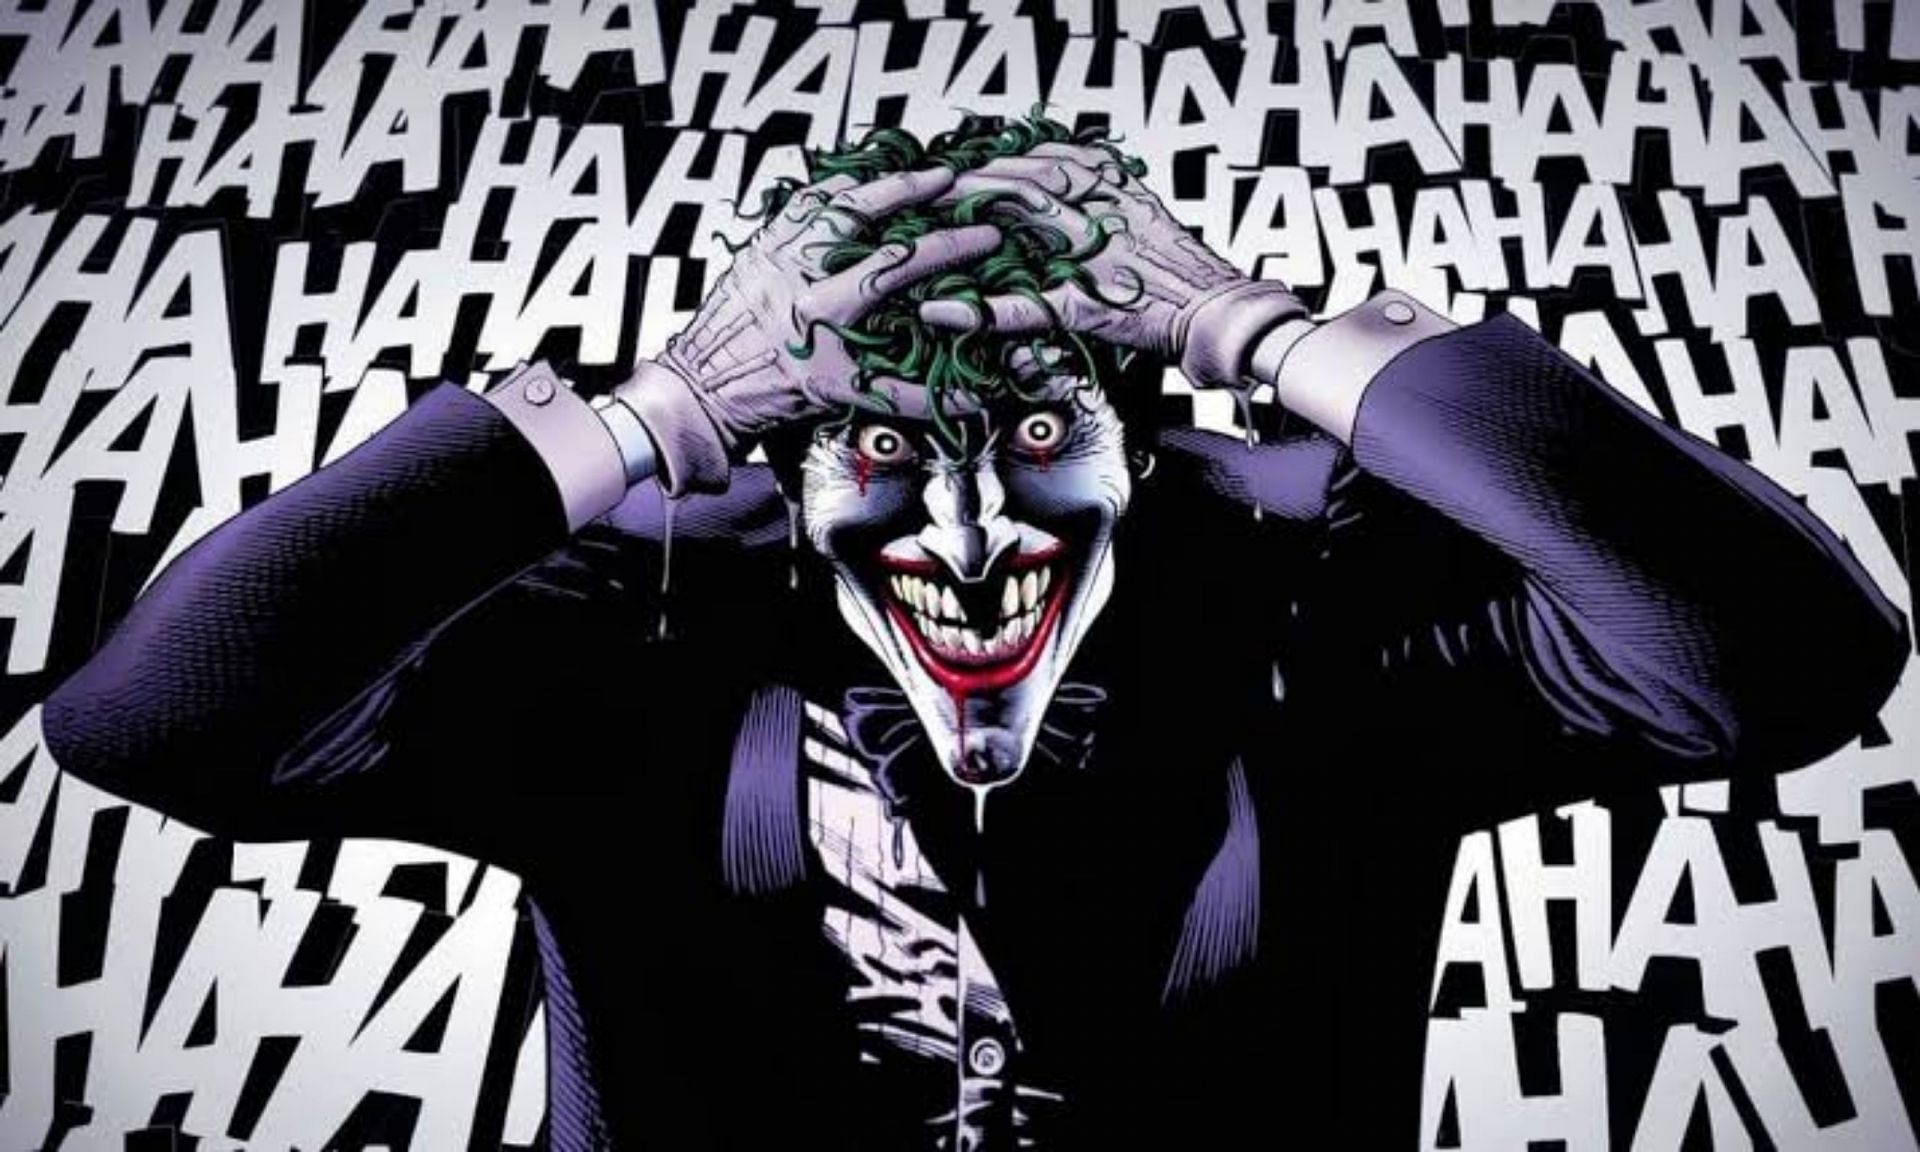 Joker from Batman: The Killing Joke (Image via DC Comics)